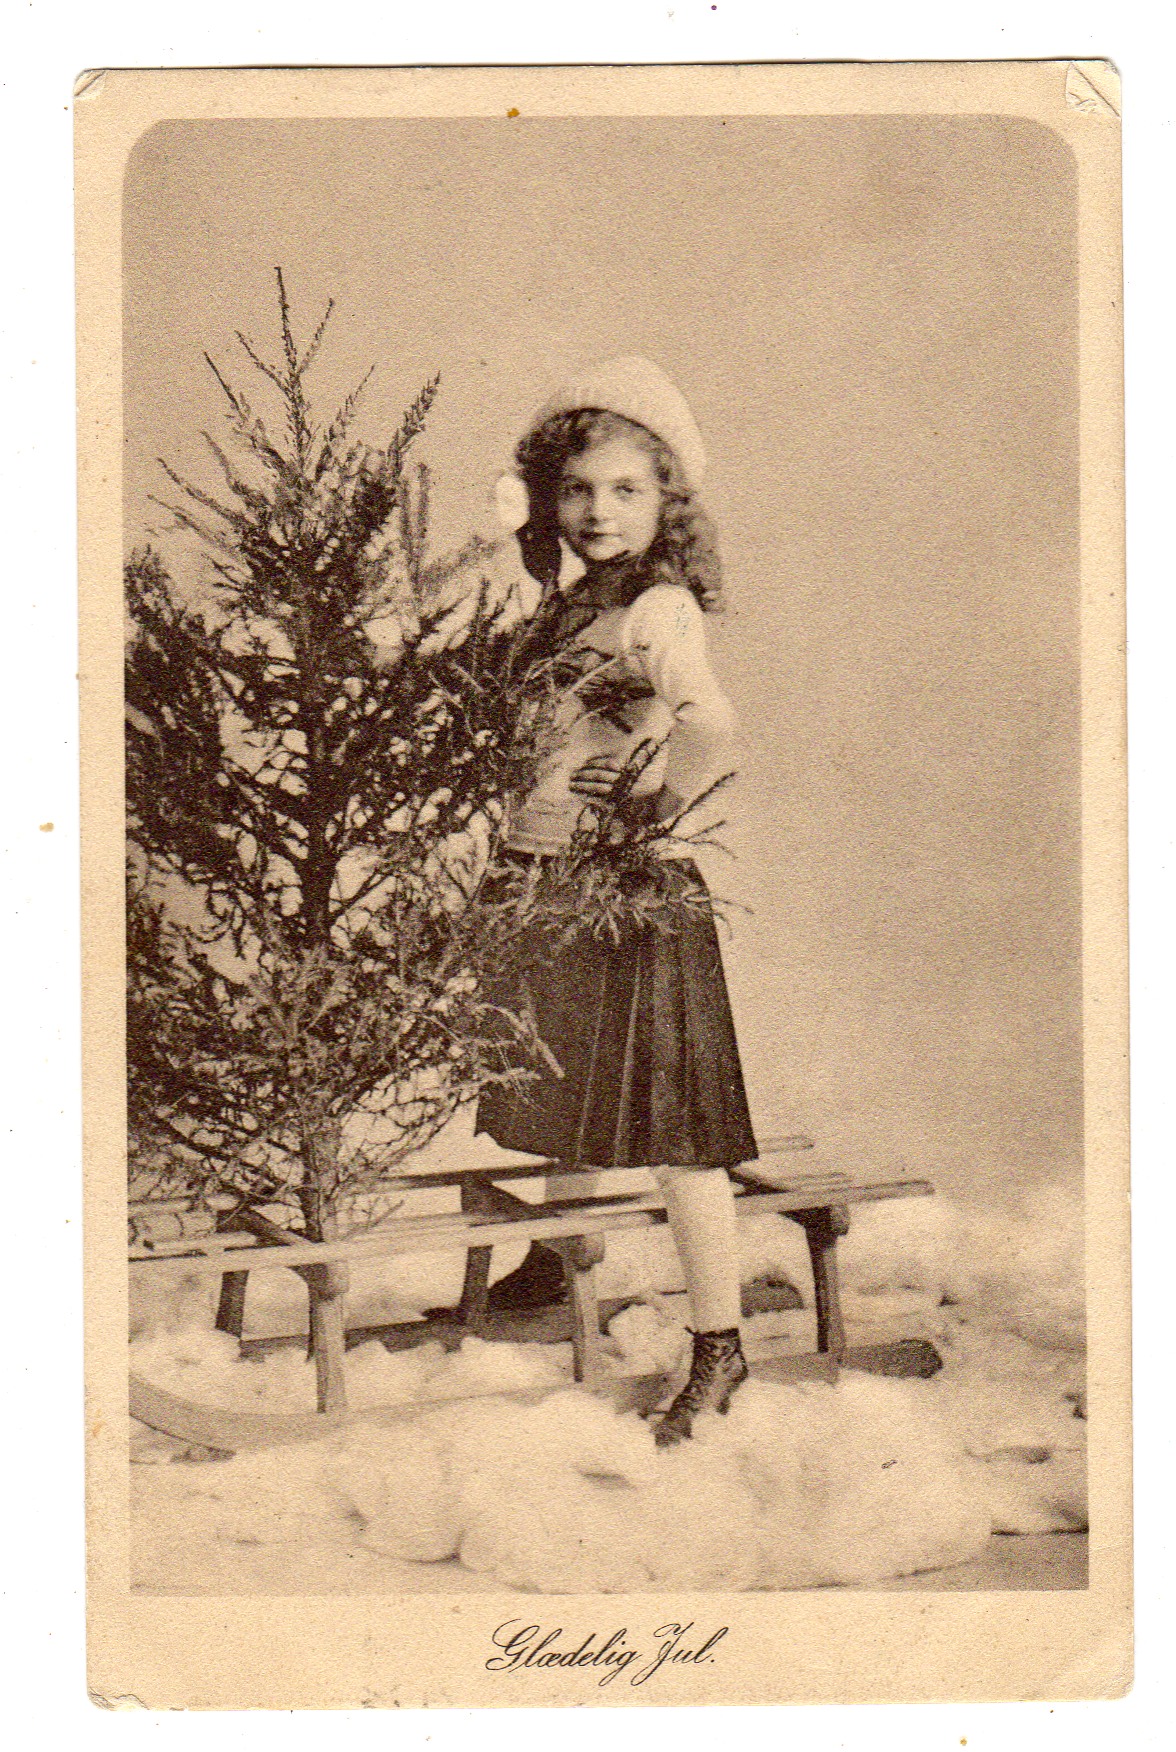 Glædelig jul st Bøle 1914 Stender